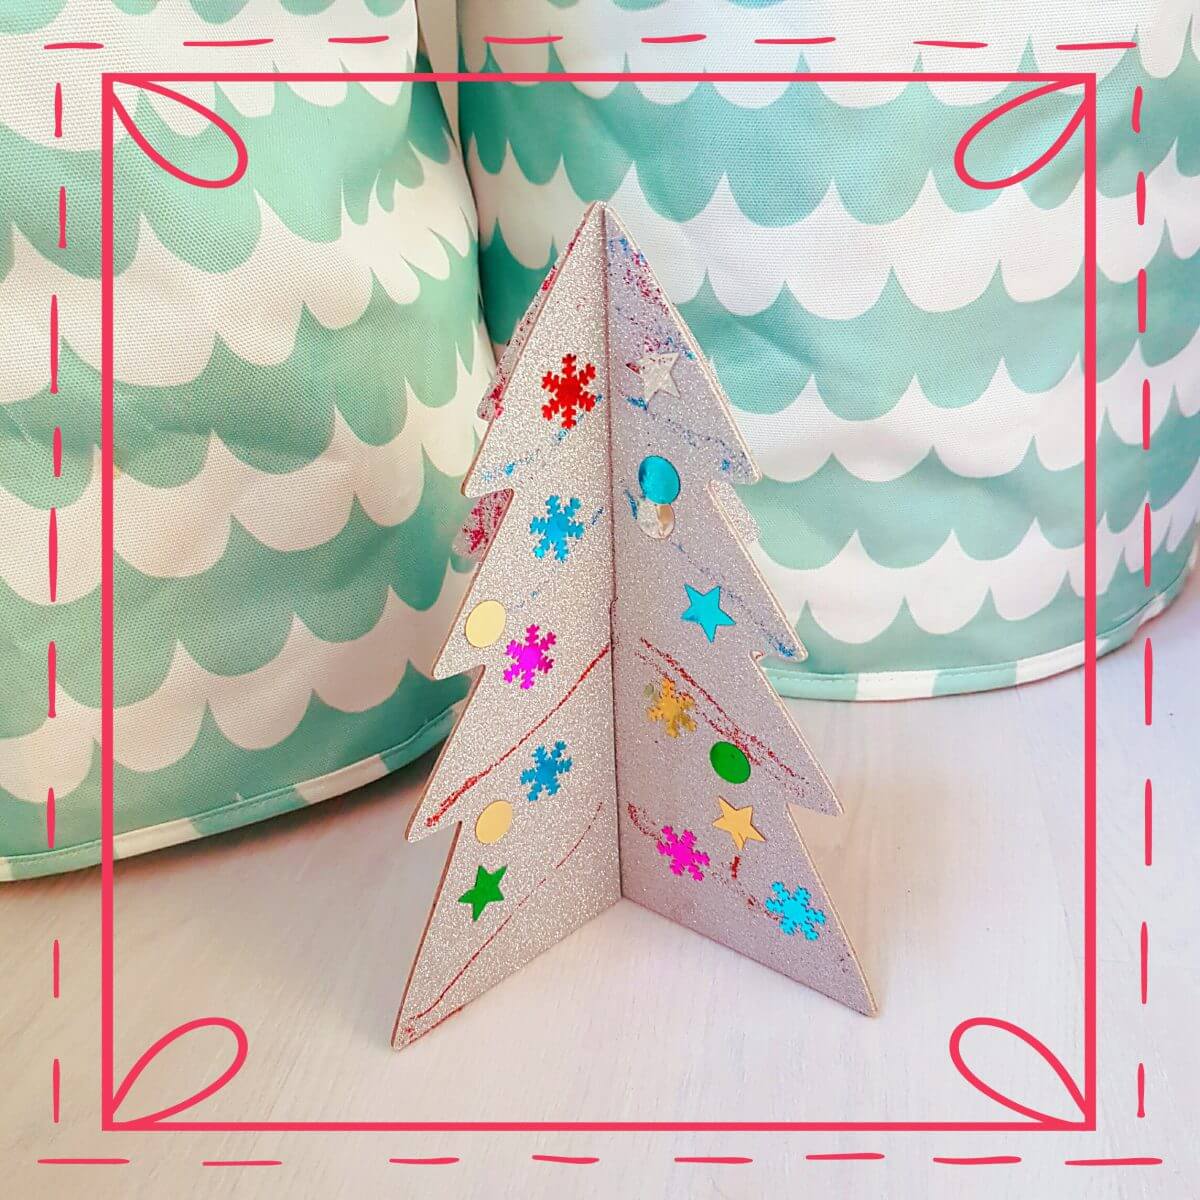 Kerst knutselen: ideeën voor peuters, kleuters, kinderen, tieners. Samen kerst knutselen is heel gezellig met kerstmis! En hier vind je de leukste ideeën om te knutselen met kerst. Zoals deze kerstboom van gekleurd papier en glitters. 